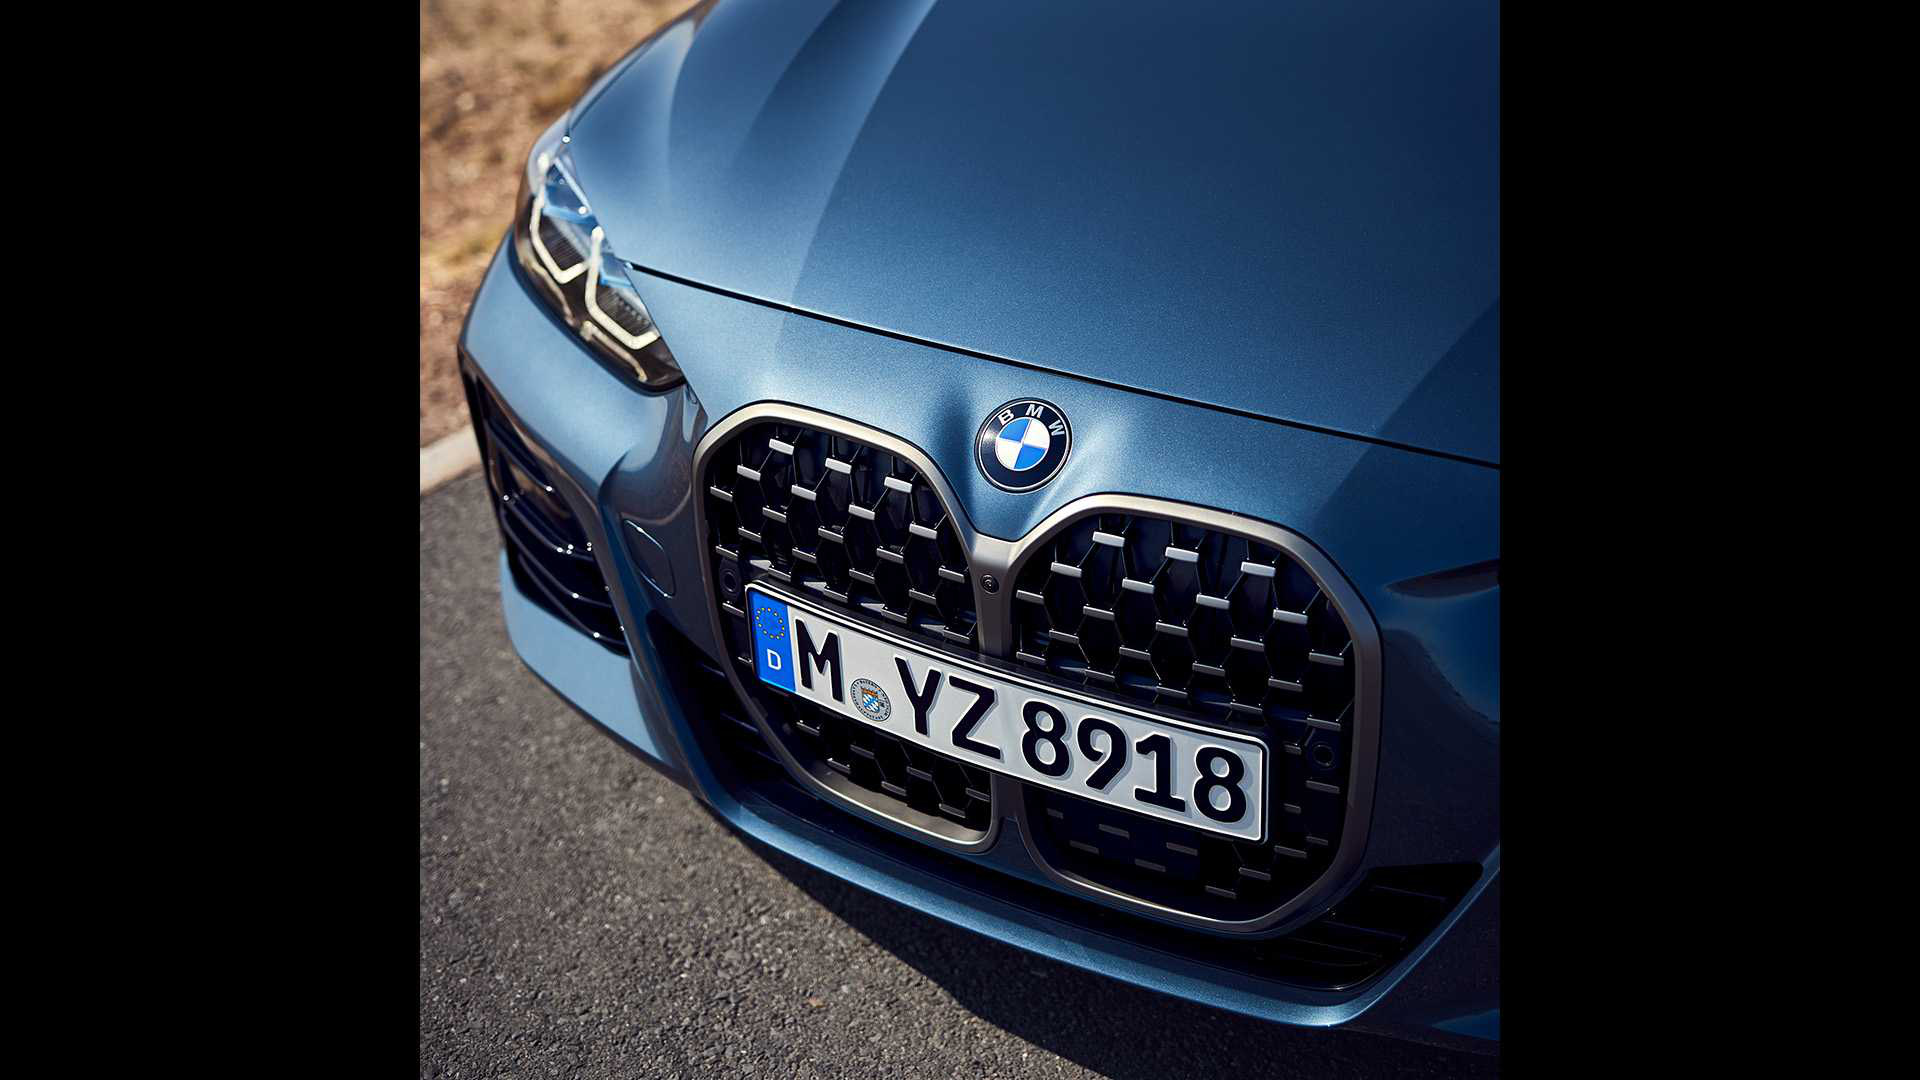 Ra mắt BMW 4-Series 2021: Tản nhiệt to chưa từng thấy, thiết kế đẹp ngang concept - Ảnh 4.